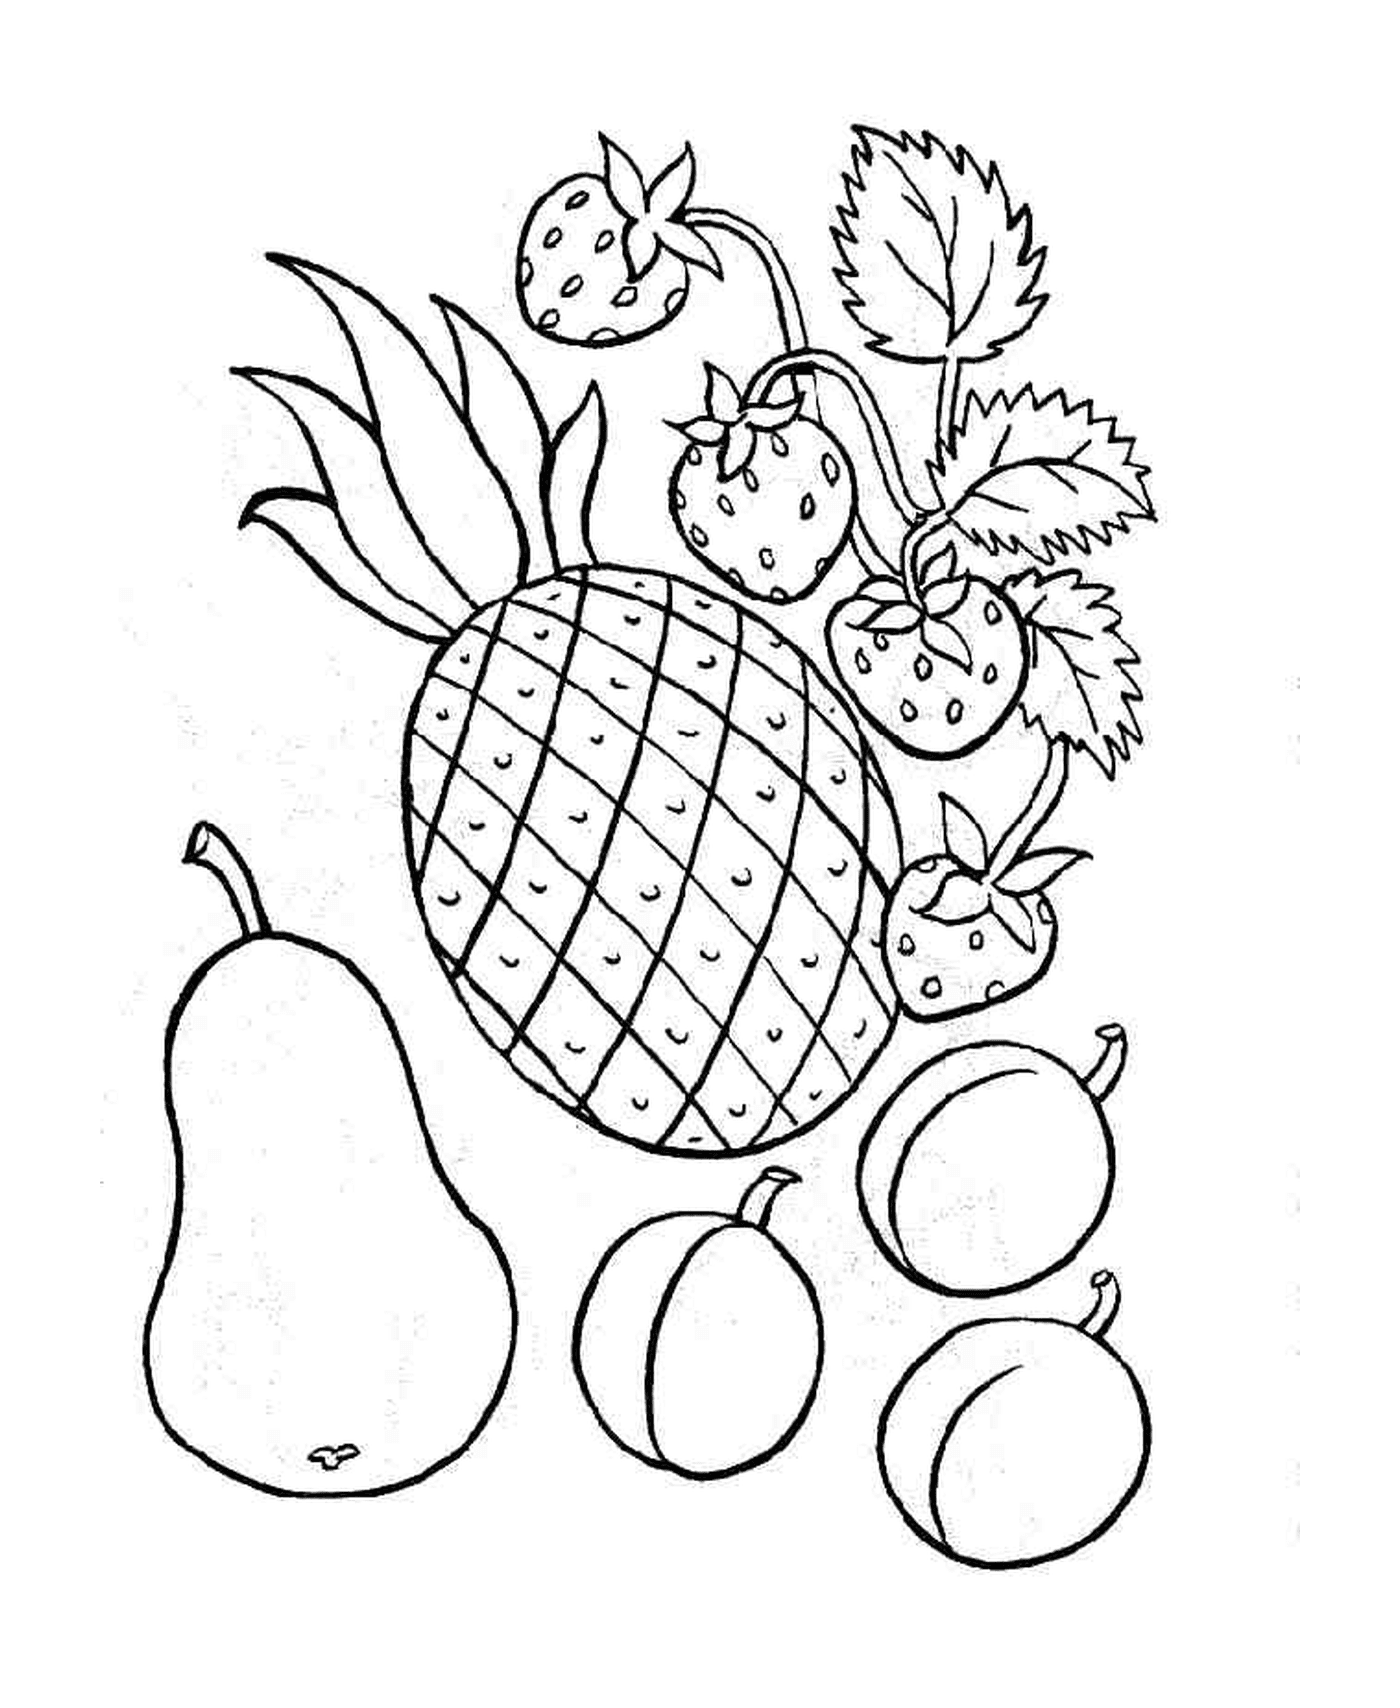  Ananas e altri frutti 